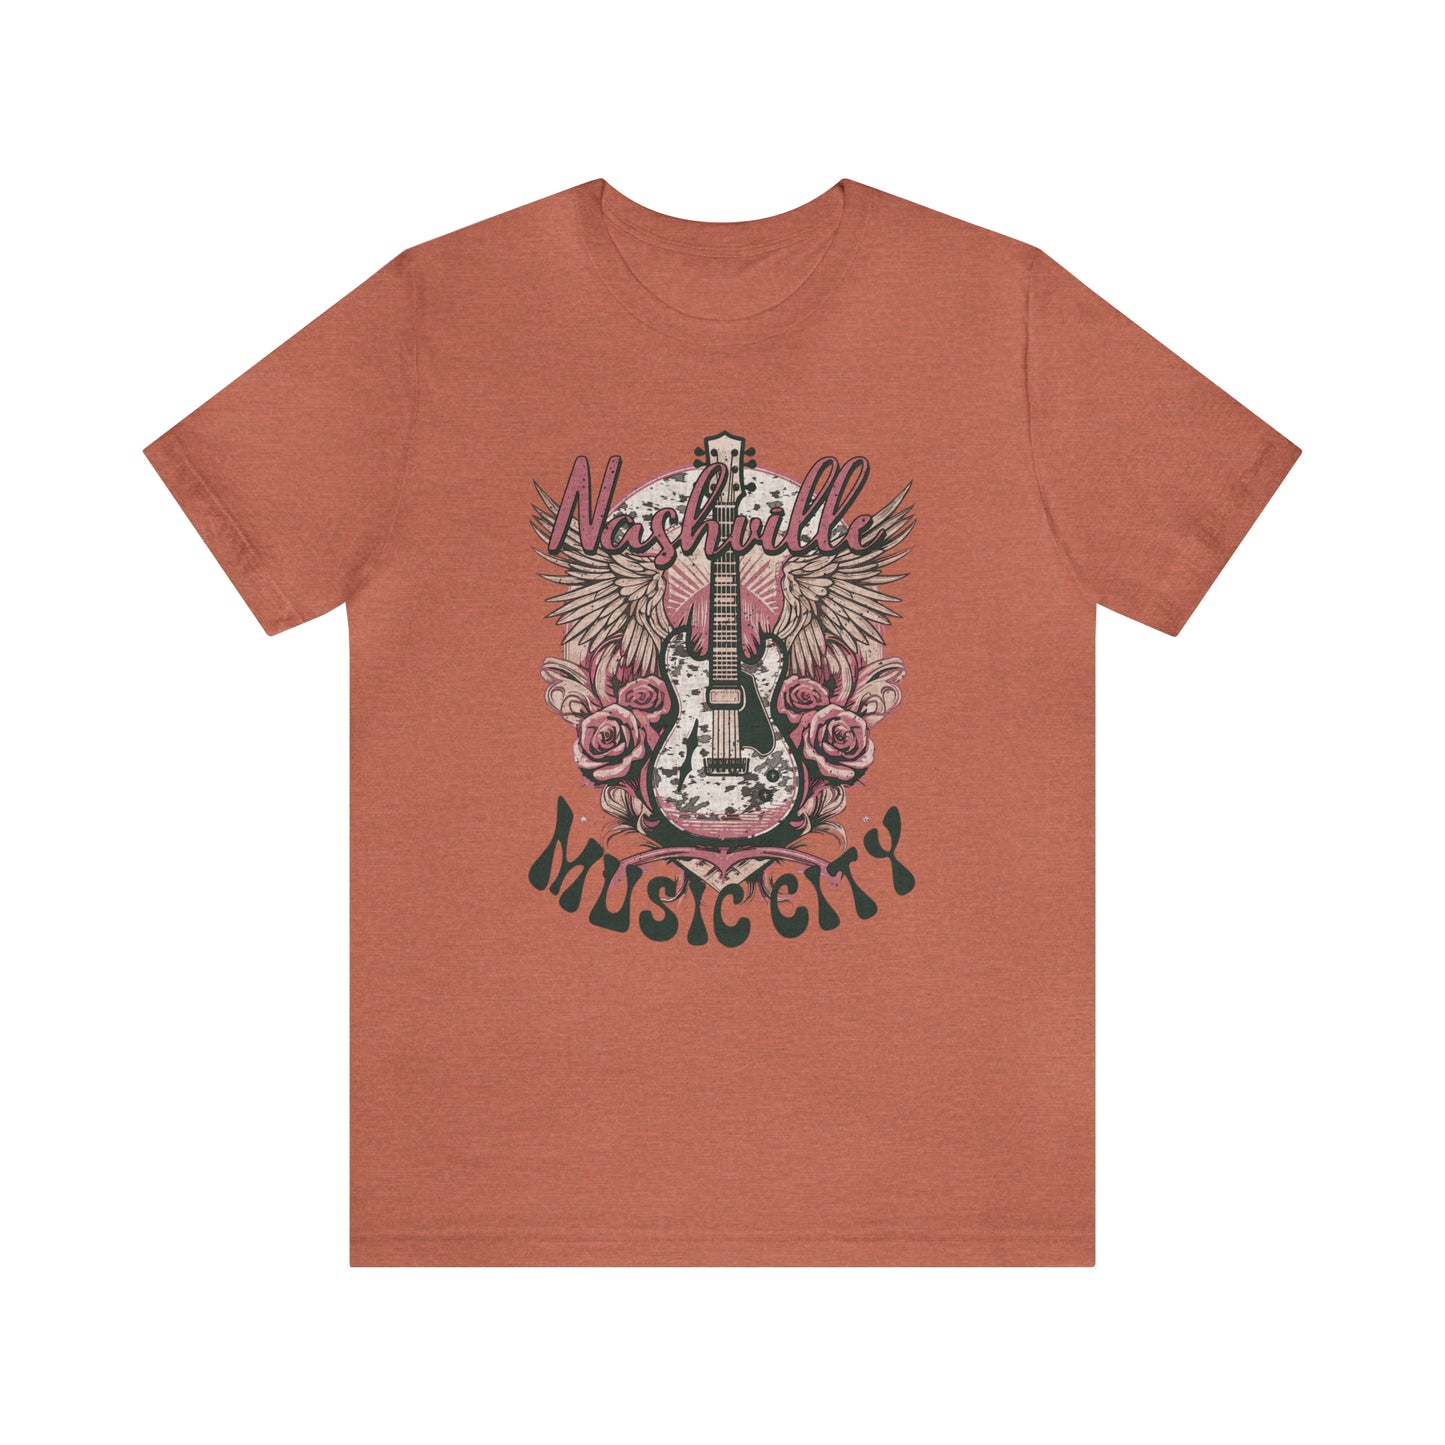 Nashville Music City - Jersey Short Sleeve T-Shirt